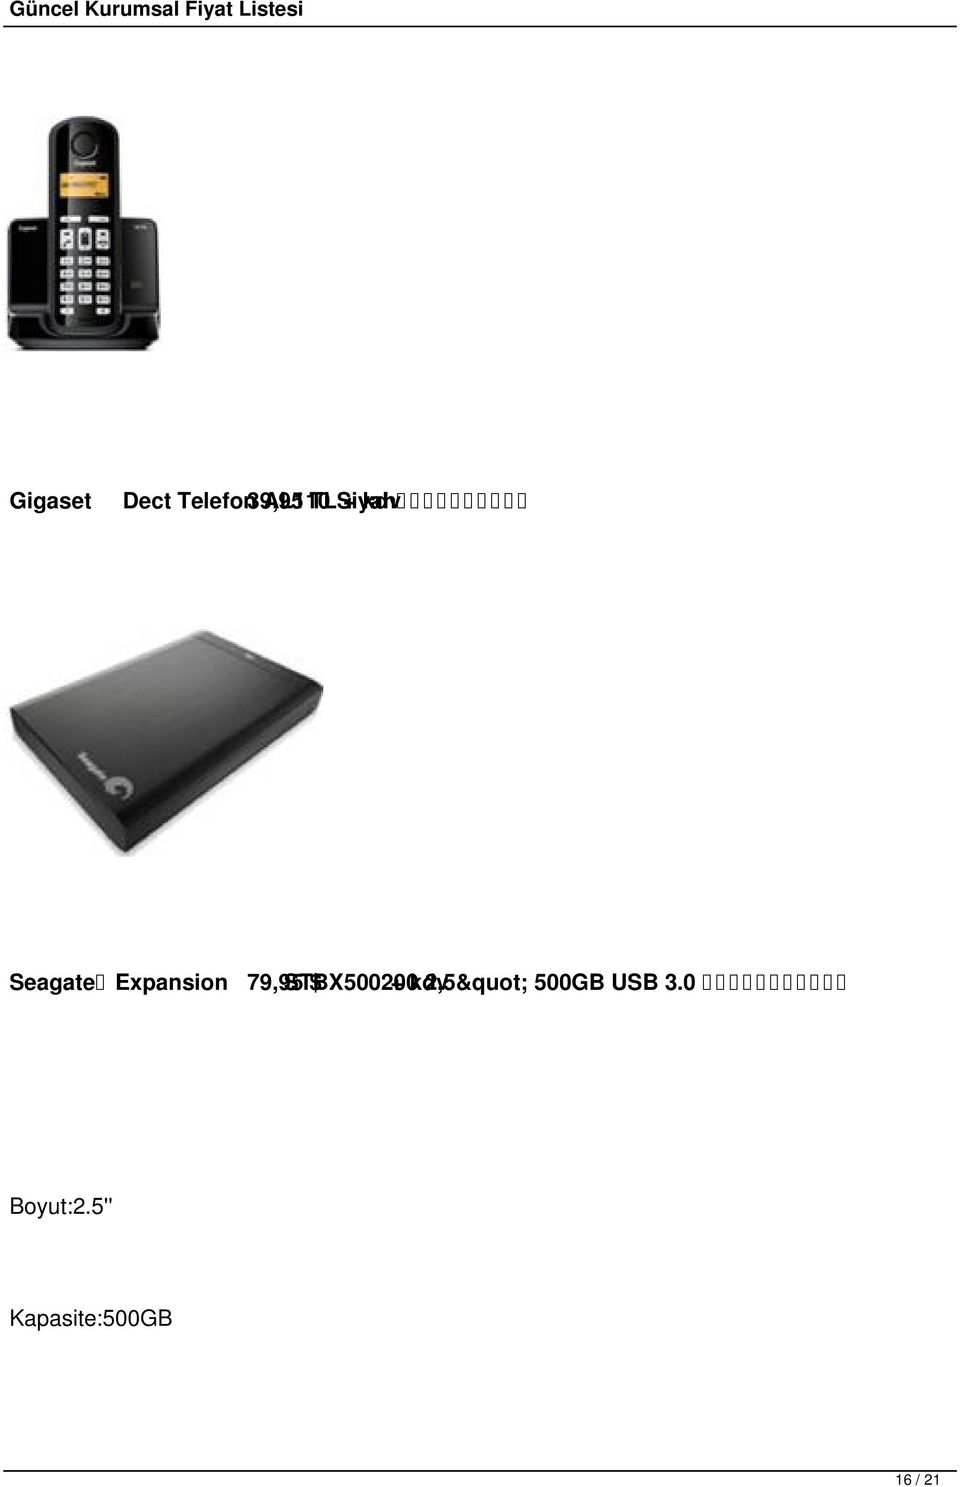 STBX500200 $ + kdv 2,5" 500GB USB 3.